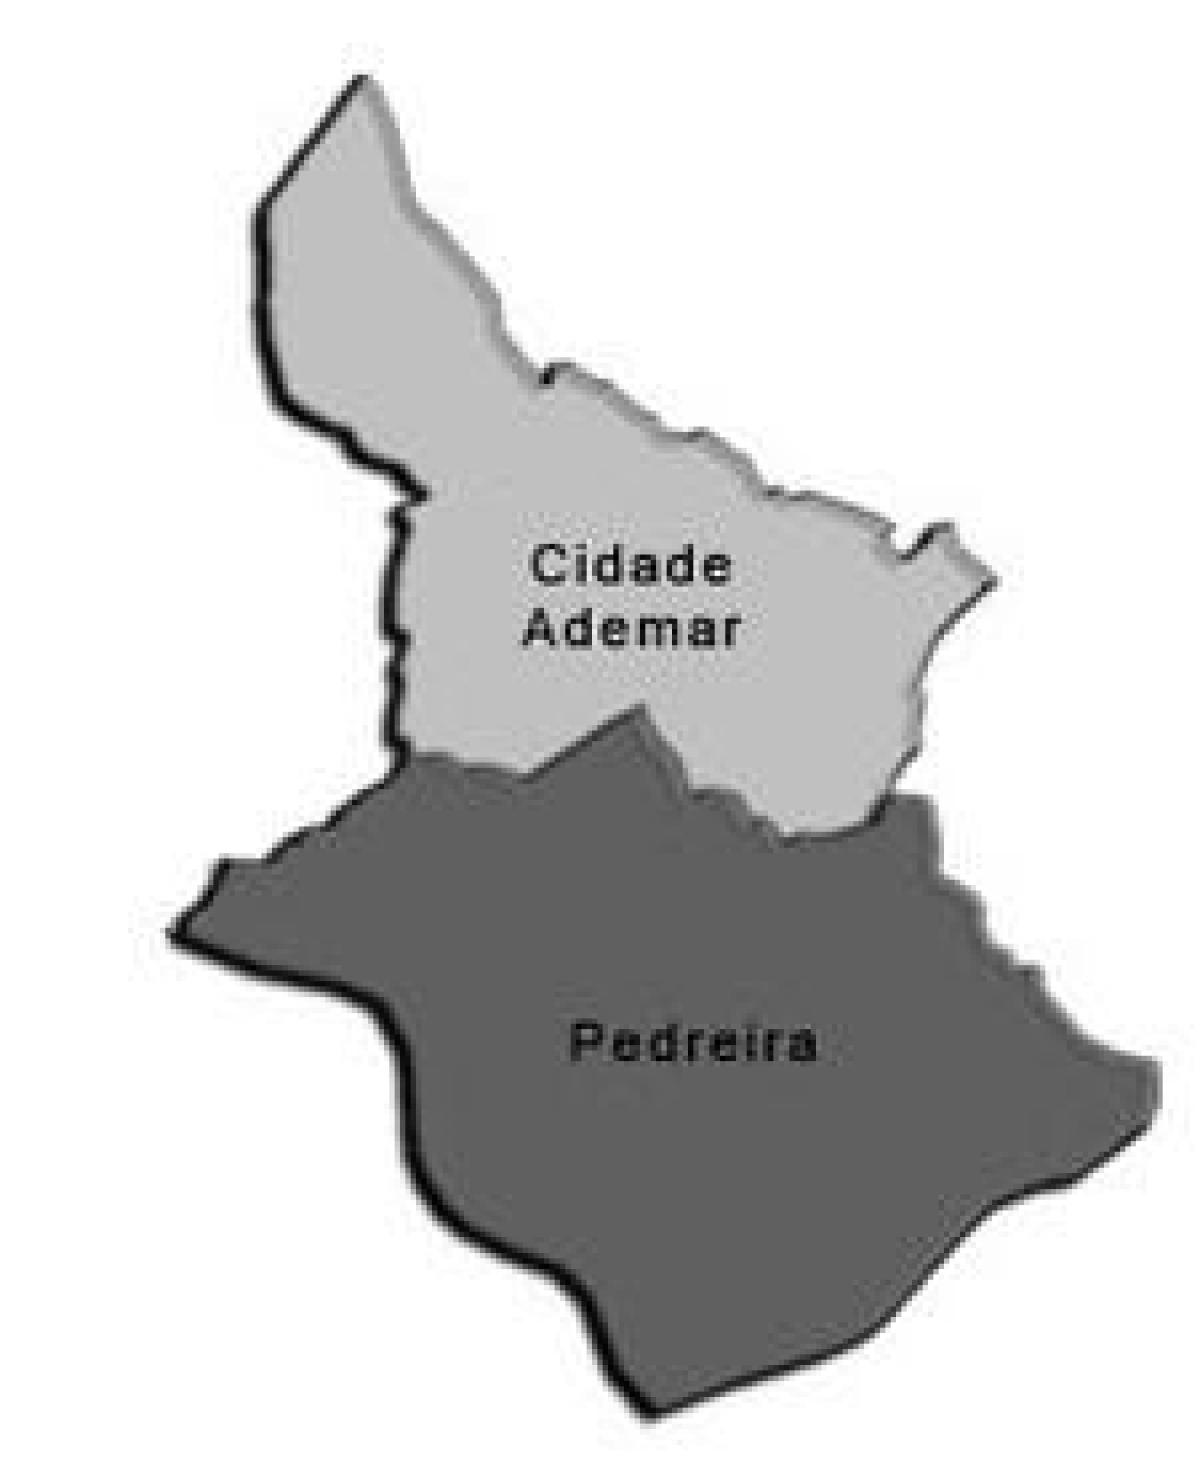 Peta dari Cidade Ademar sub-prefektur